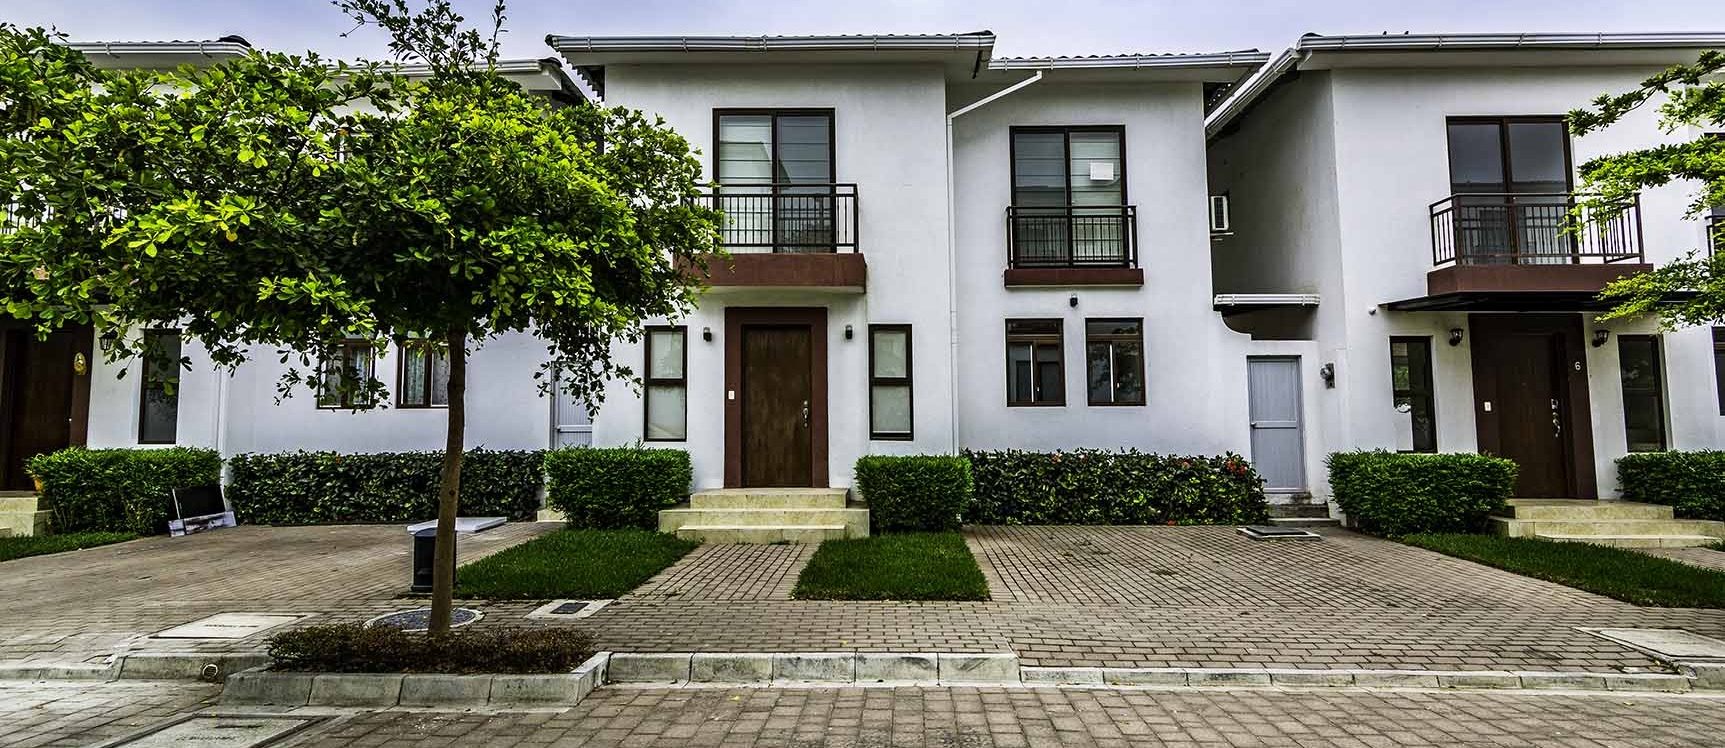 GeoBienes - Casa en venta en Villas del Bosque Vía a La Costa - Guayaquil - Plusvalia Guayaquil Casas de venta y alquiler Inmobiliaria Ecuador